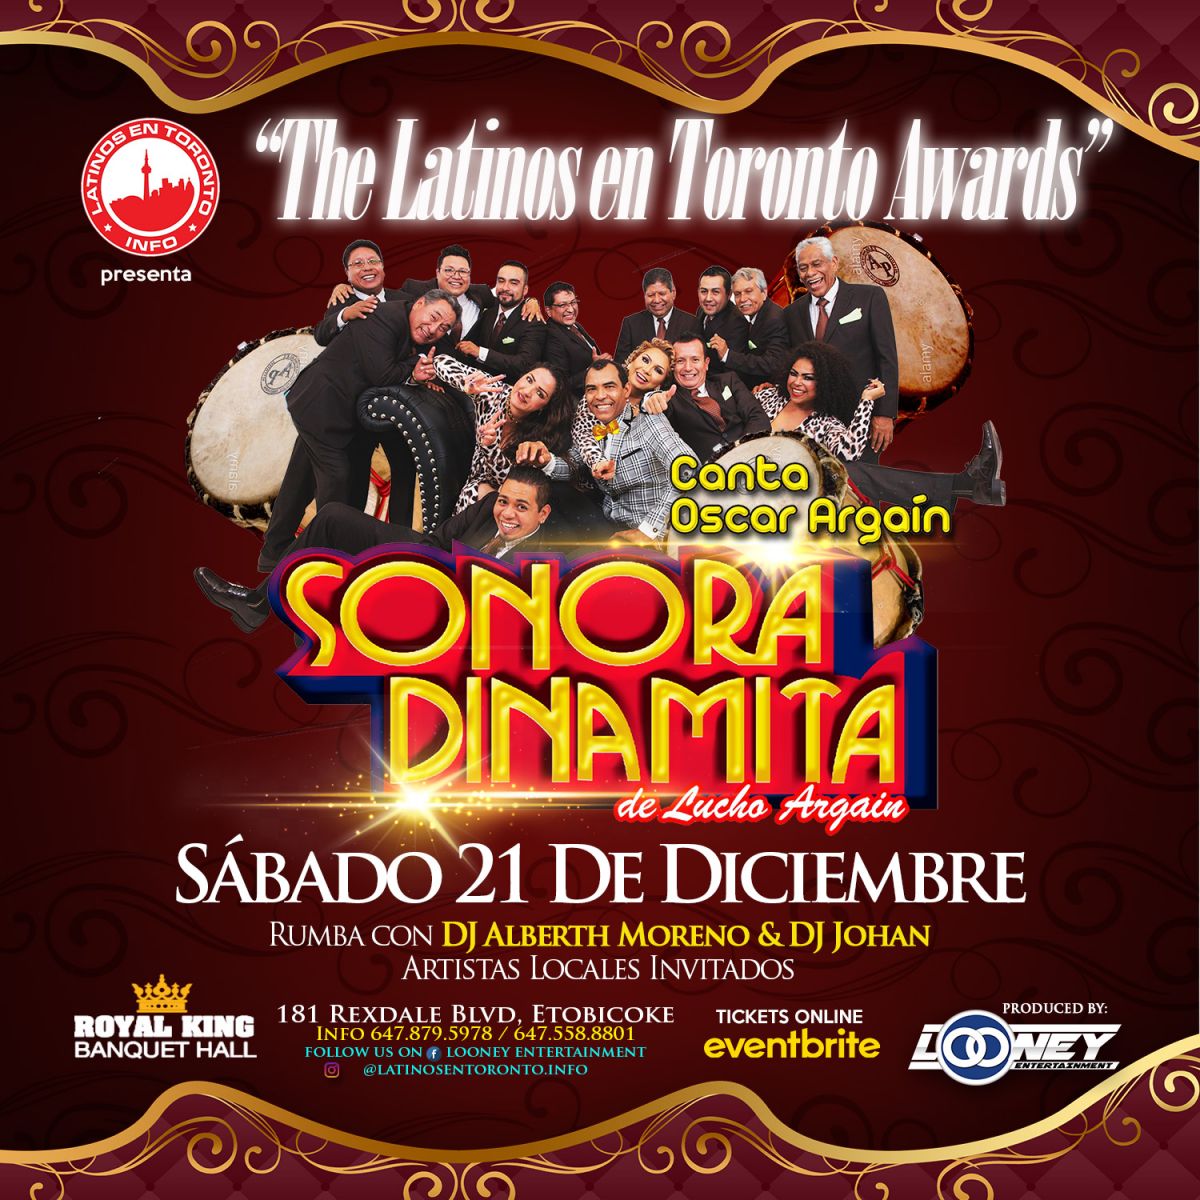  The Latinos en Toronto Awards con La Sonora Dinamita 